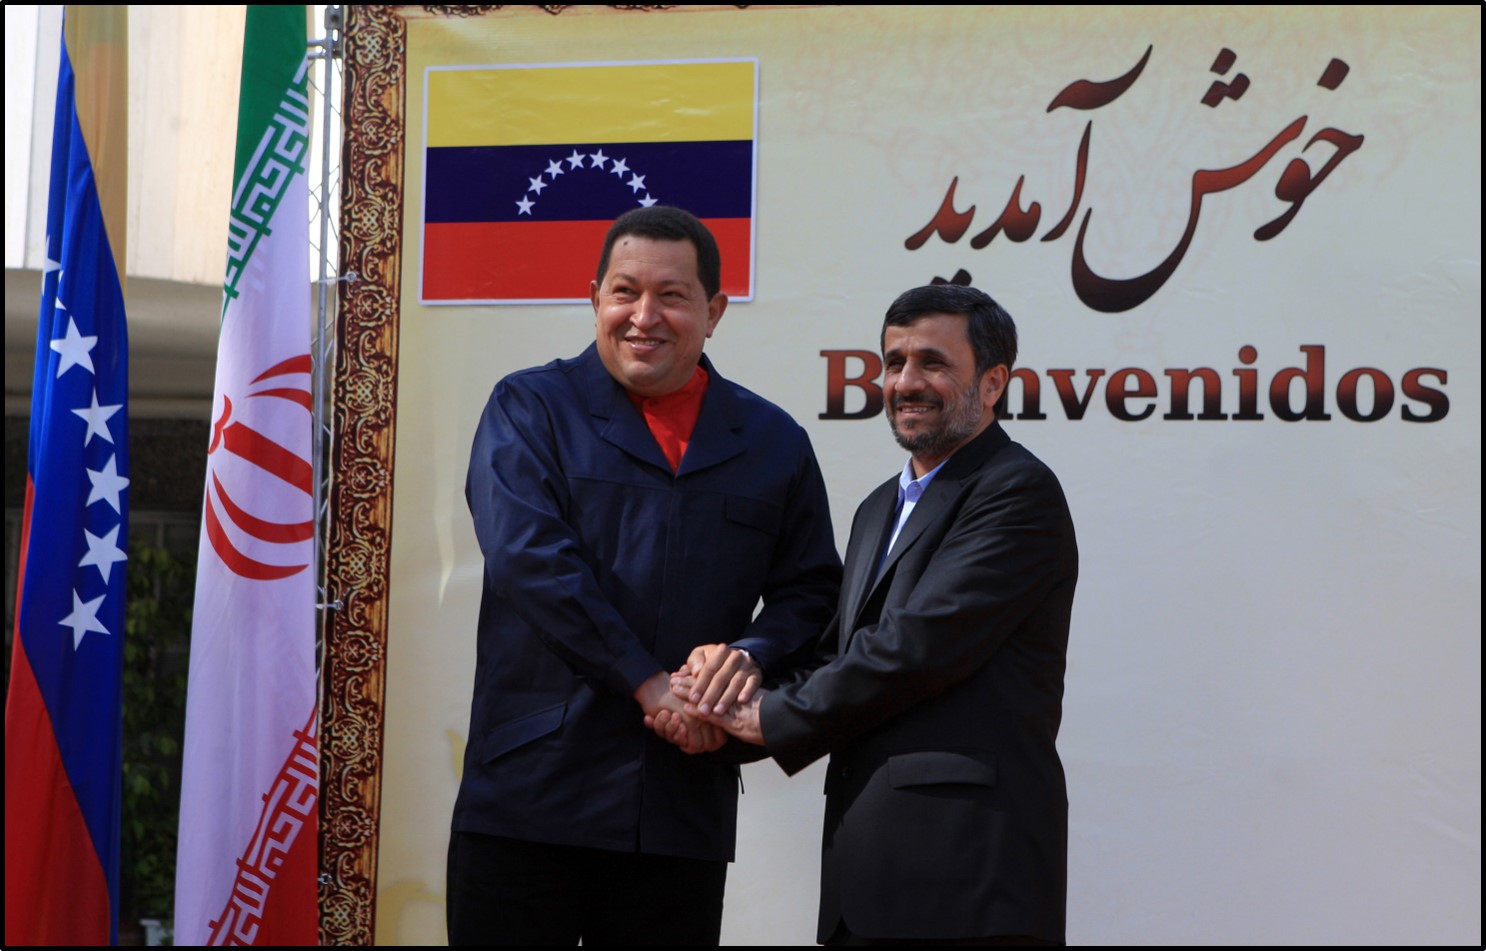 Chavez meets with Ahmadinejad